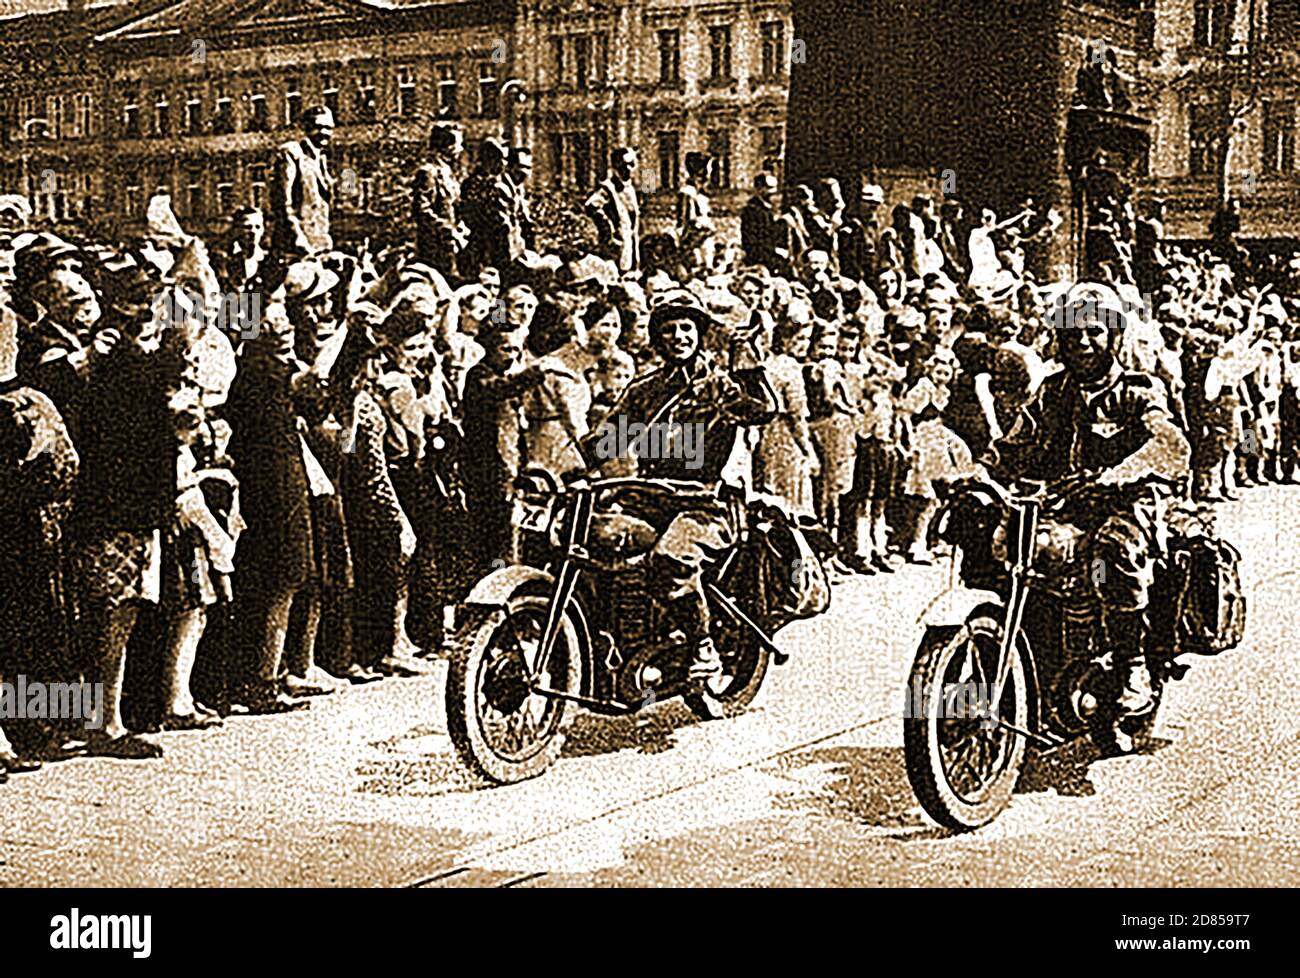 Image de la presse de la Seconde Guerre mondiale des motocyclistes russes qui ont mené l'armée à travers la ville à la libération de Prague en Tchécoslovaquie en 1945. La ville de Prague a été libérée par l'URSS lors de l'offensive de Prague. Toutes les troupes allemandes du Centre du Groupe d'Armée (Heeresgruppe Mitte) et beaucoup du Groupe d'Armée Ostmark (anciennement appelé Groupe d'Armée Sud) ont été tuées ou capturées. L'offensive de Prague (en russe "l'offensive stratégique de Prague" ( Пражская стратегическая наступательная операция ) a été la dernière opération militaire majeure de la Seconde Guerre mondiale en Europe. Les Soviétiques entrent à Prague, le 9 mai 1945 Banque D'Images